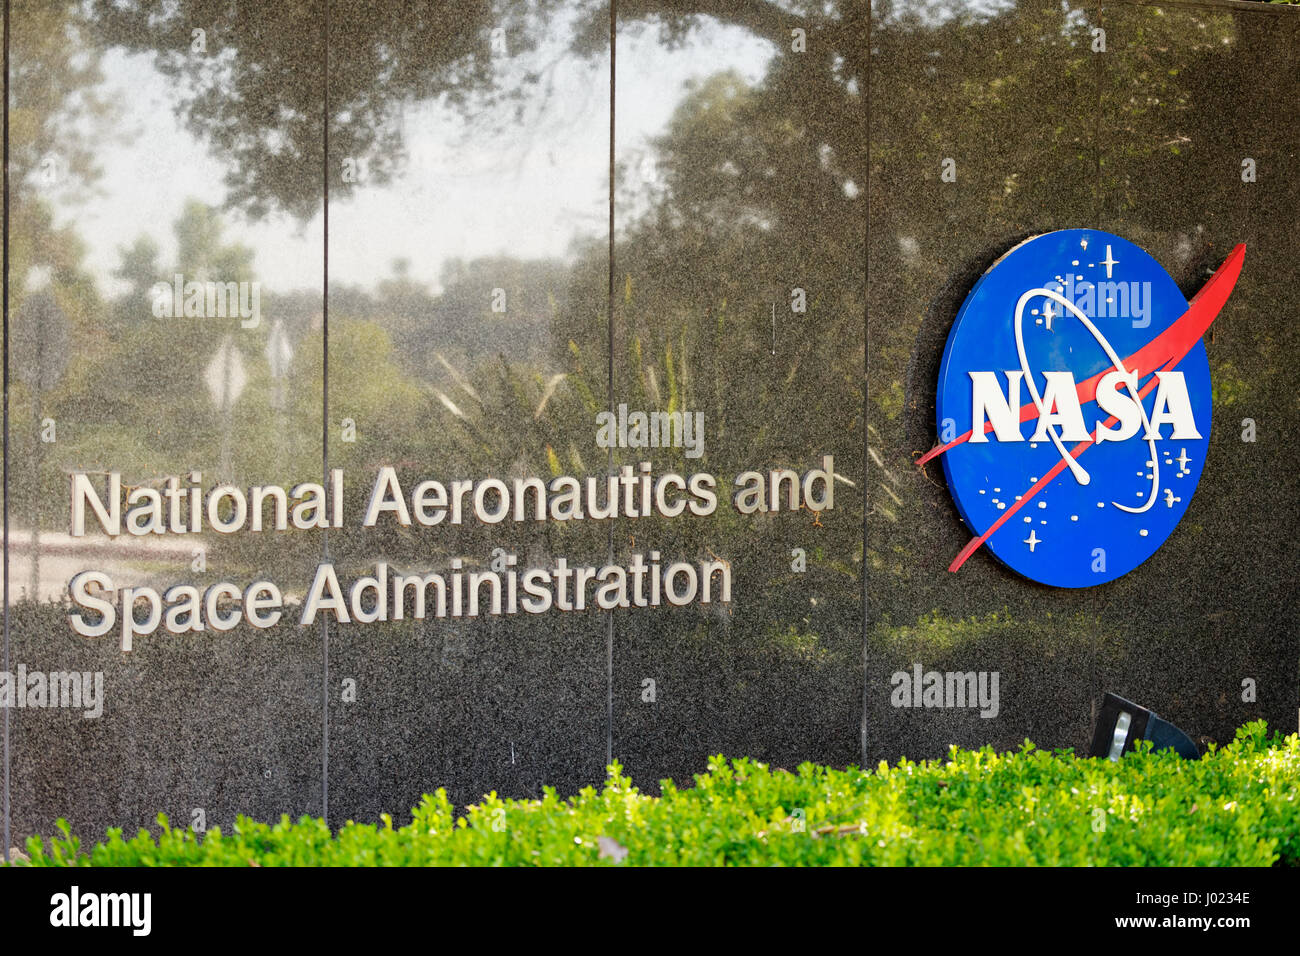 L'entrée de le Jet Propulsion Laboratory de la NASA dans La Canada (USA) Banque D'Images